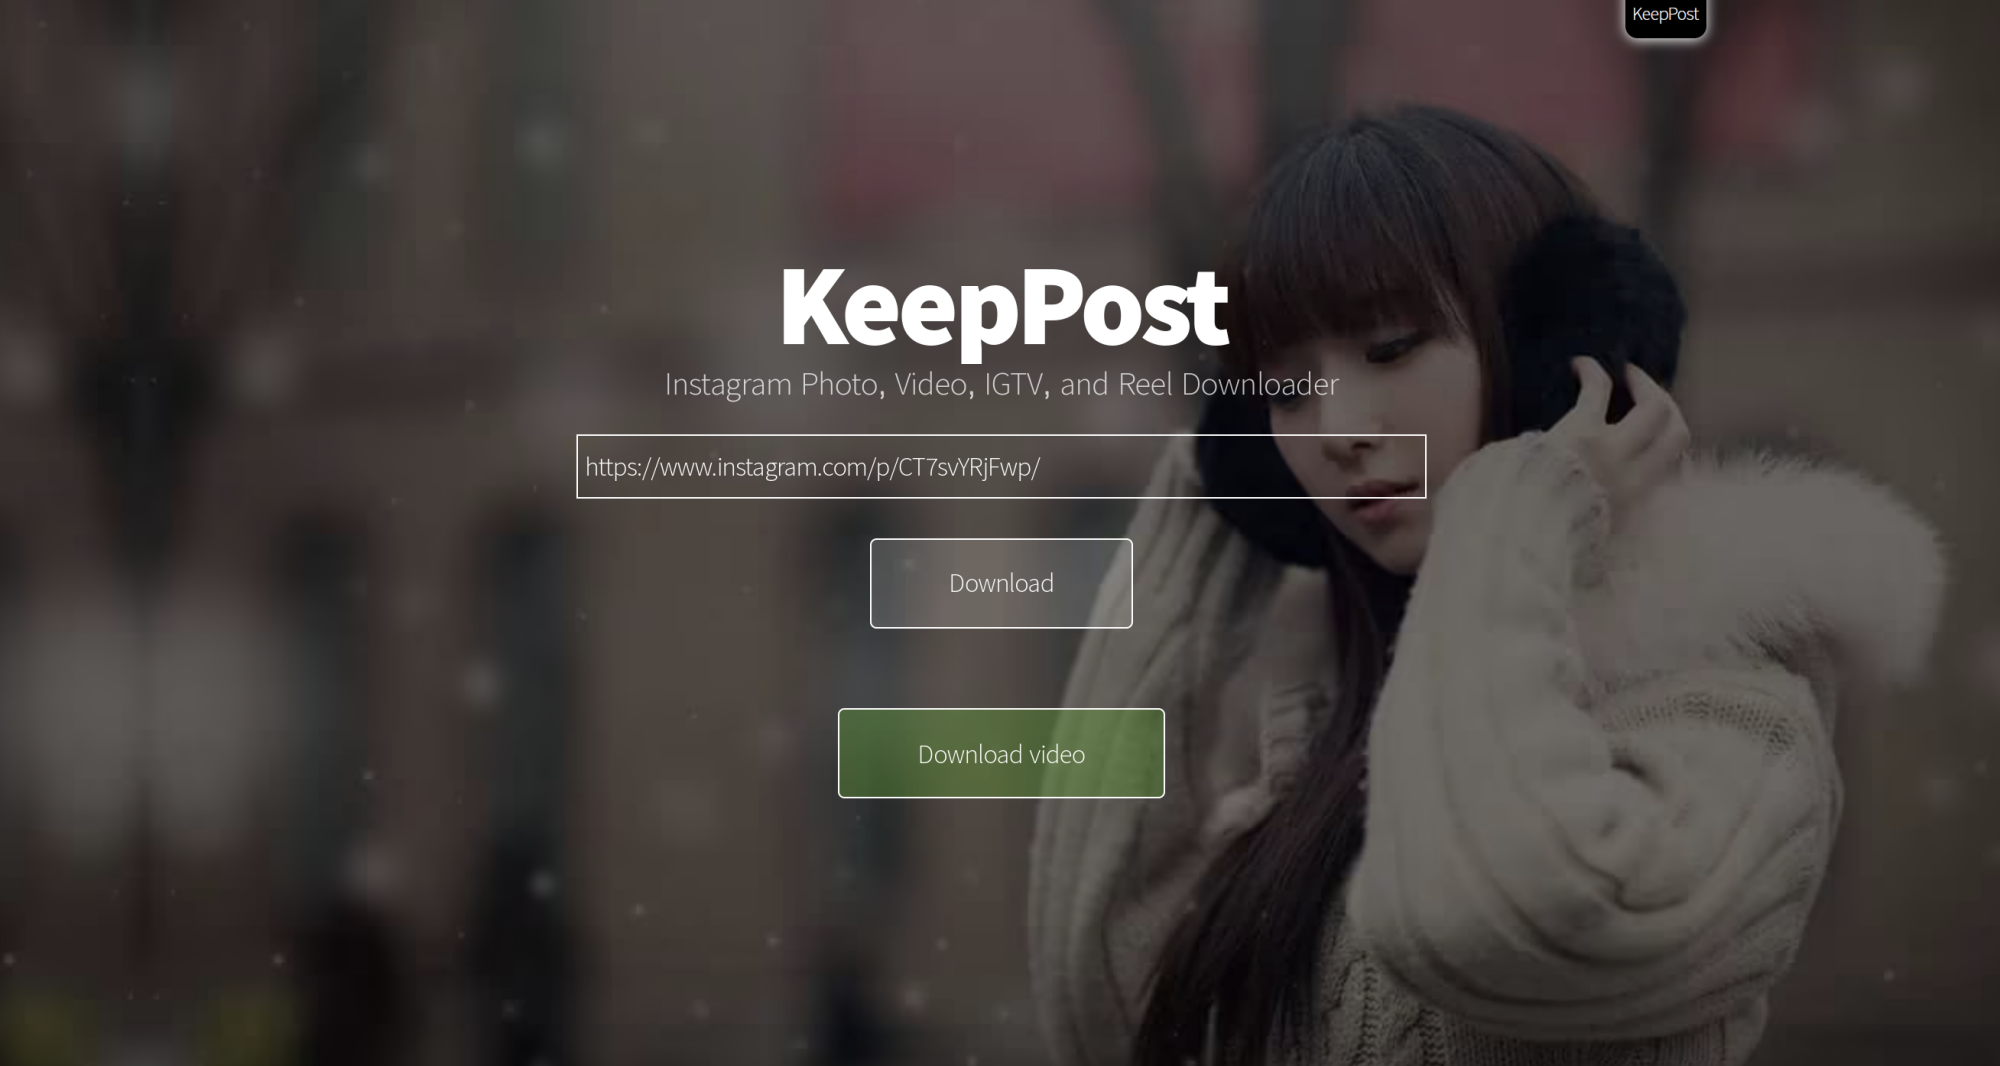 Una forma de descargar y guardar publicaciones de Instagram es mediante el uso de una aplicación de terceros, como KeepPost